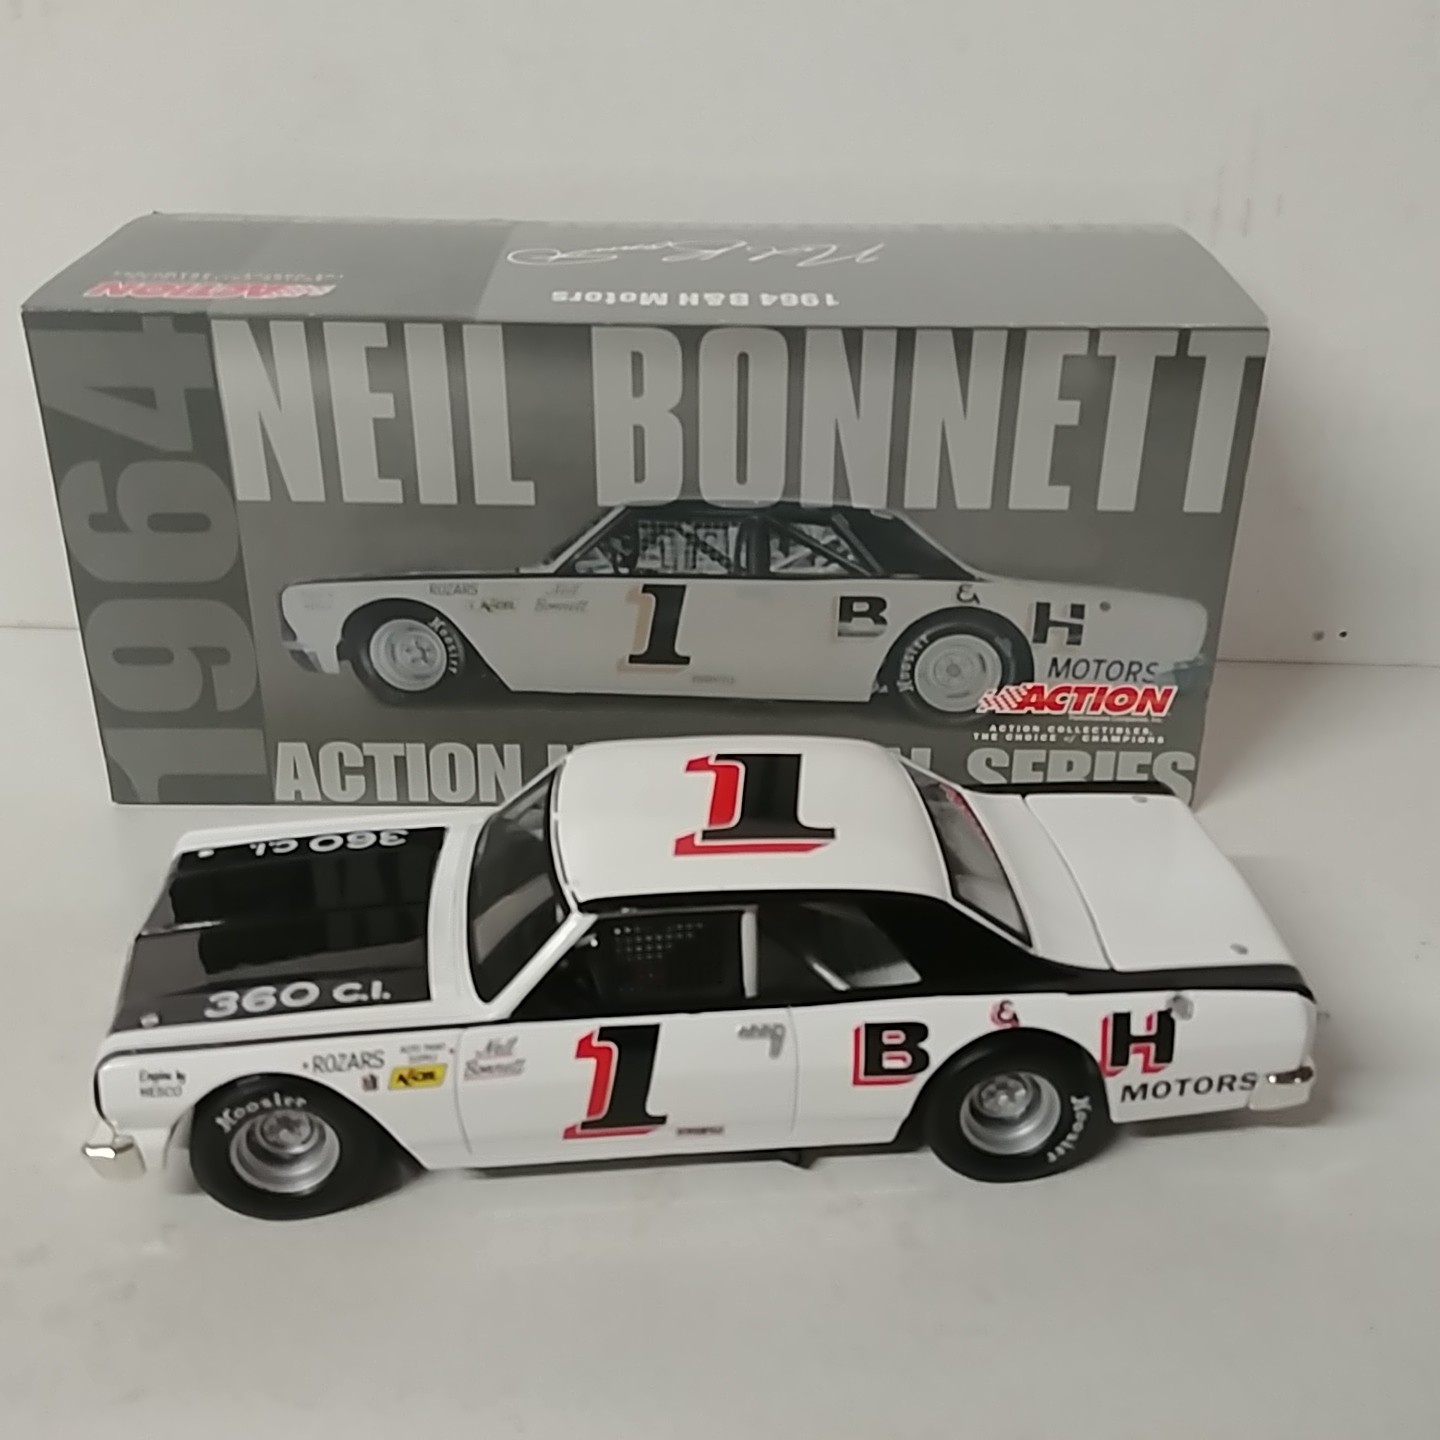 1964 Neil Bonnett 1/24th B&H Motors Chevelle